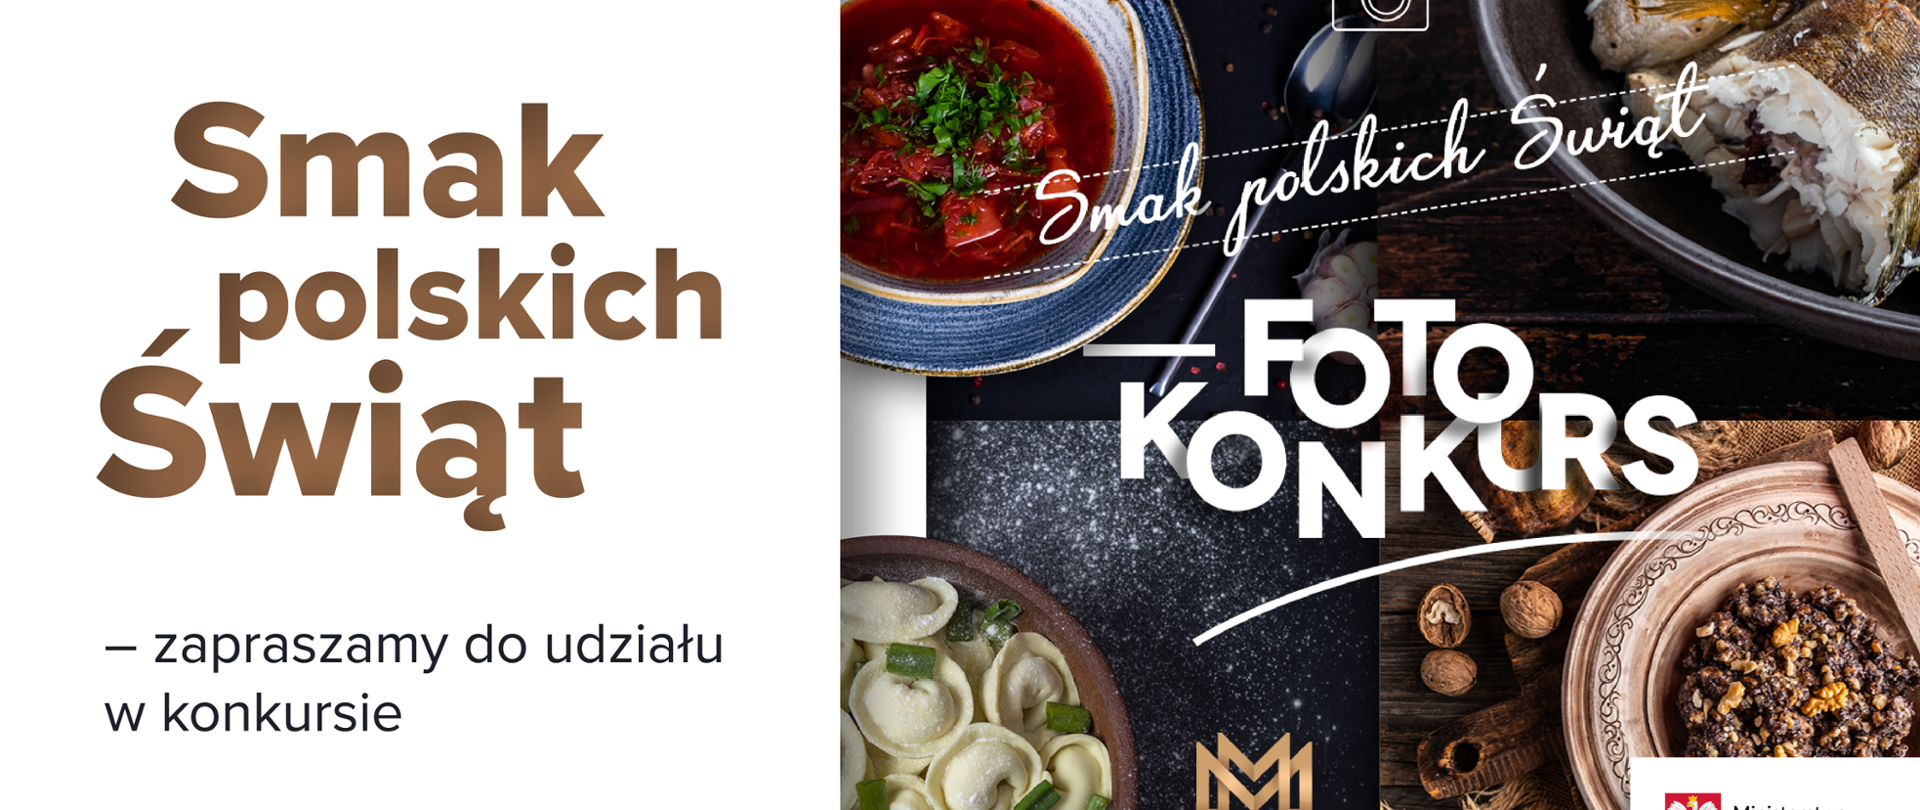 Weź udział w konkursie "Smak polskich Świąt", grafika zachęcająca do wzięcia udziału w konkursie.